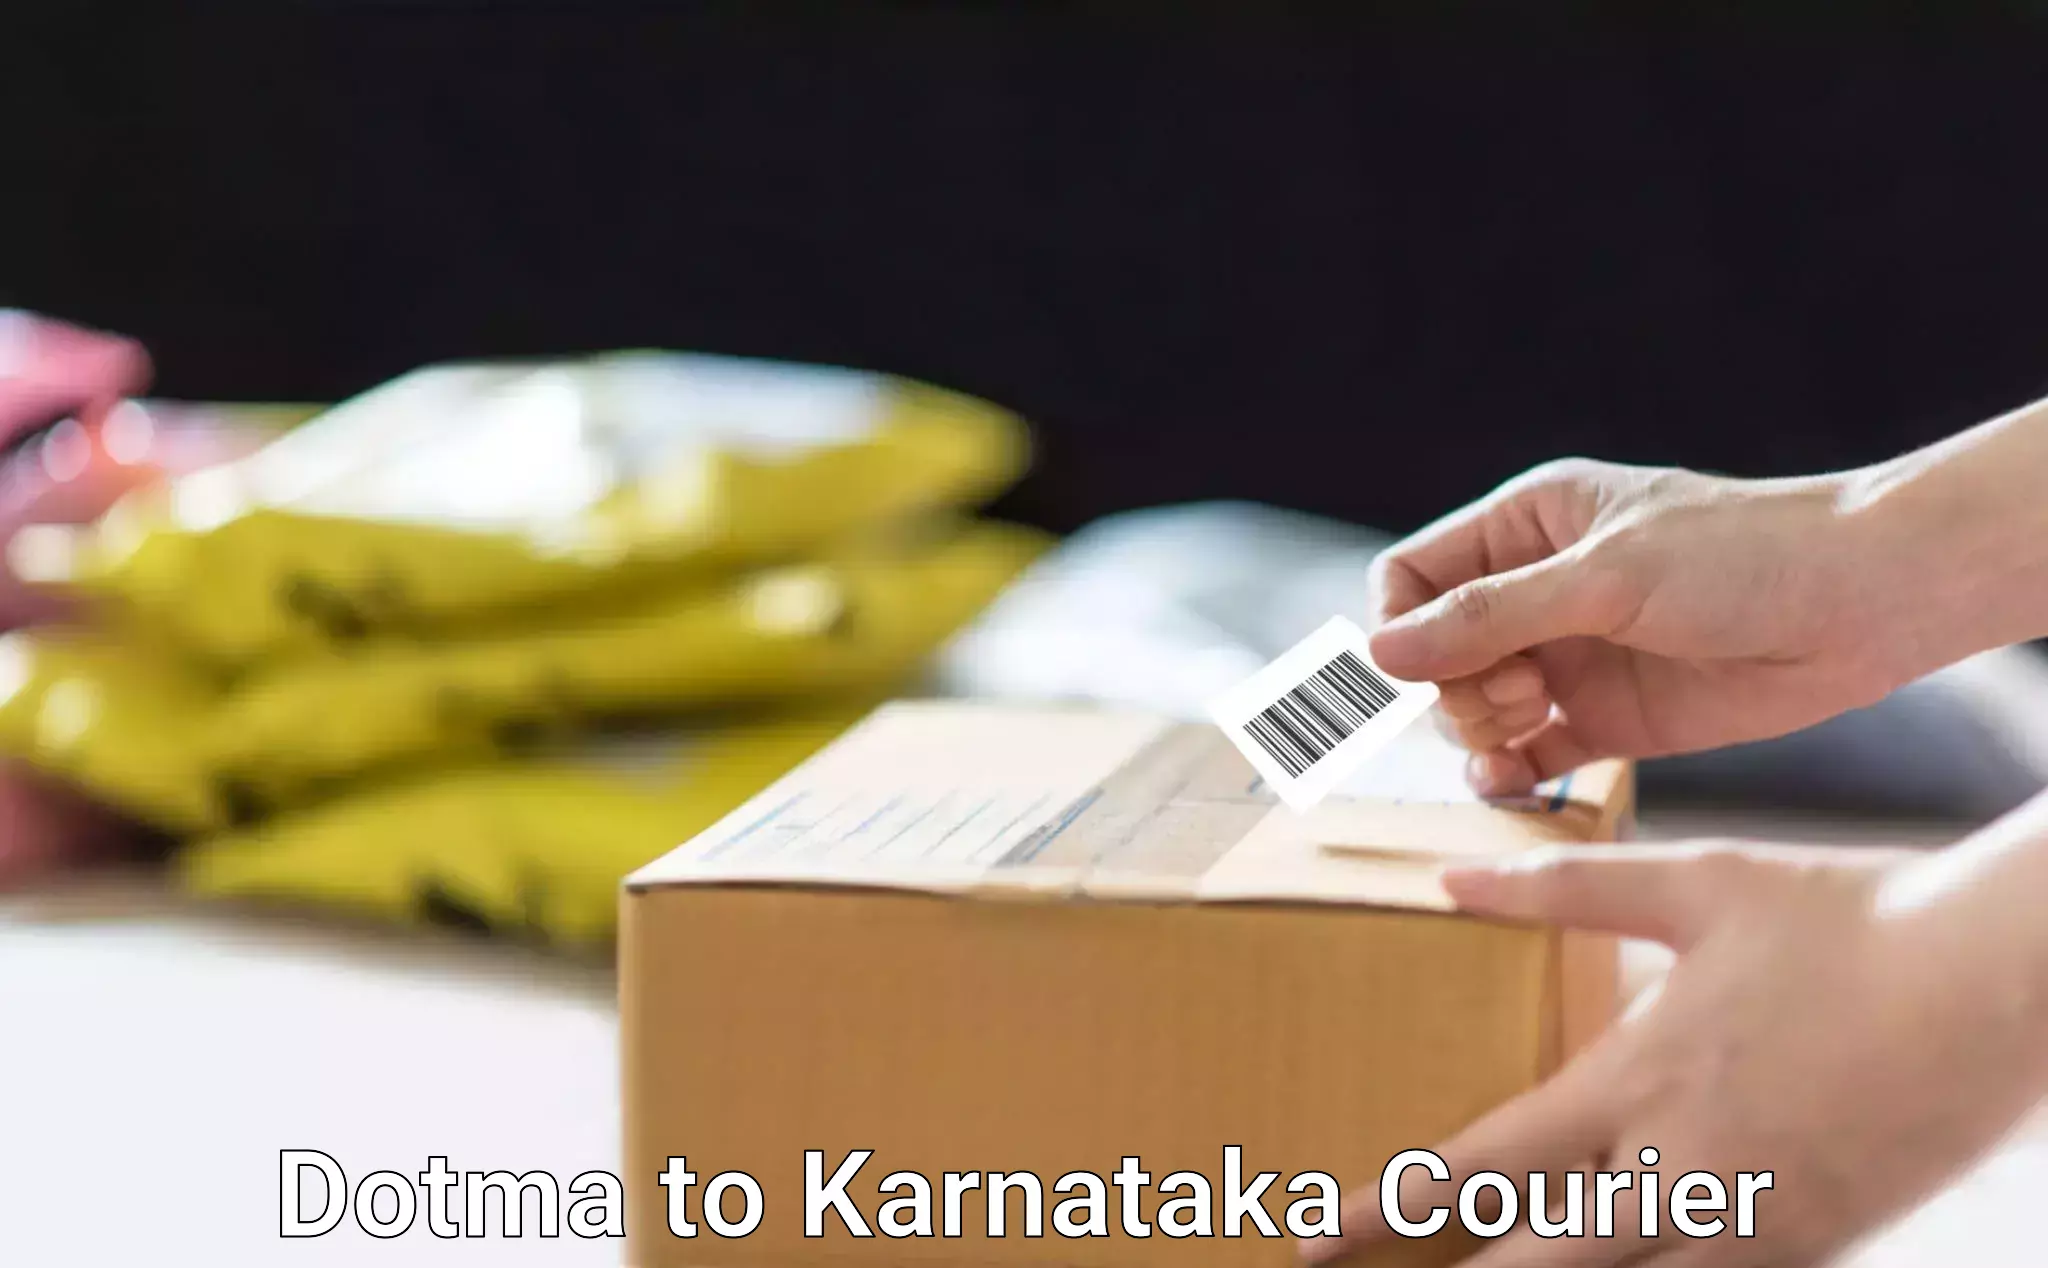 Express delivery capabilities Dotma to Karnataka